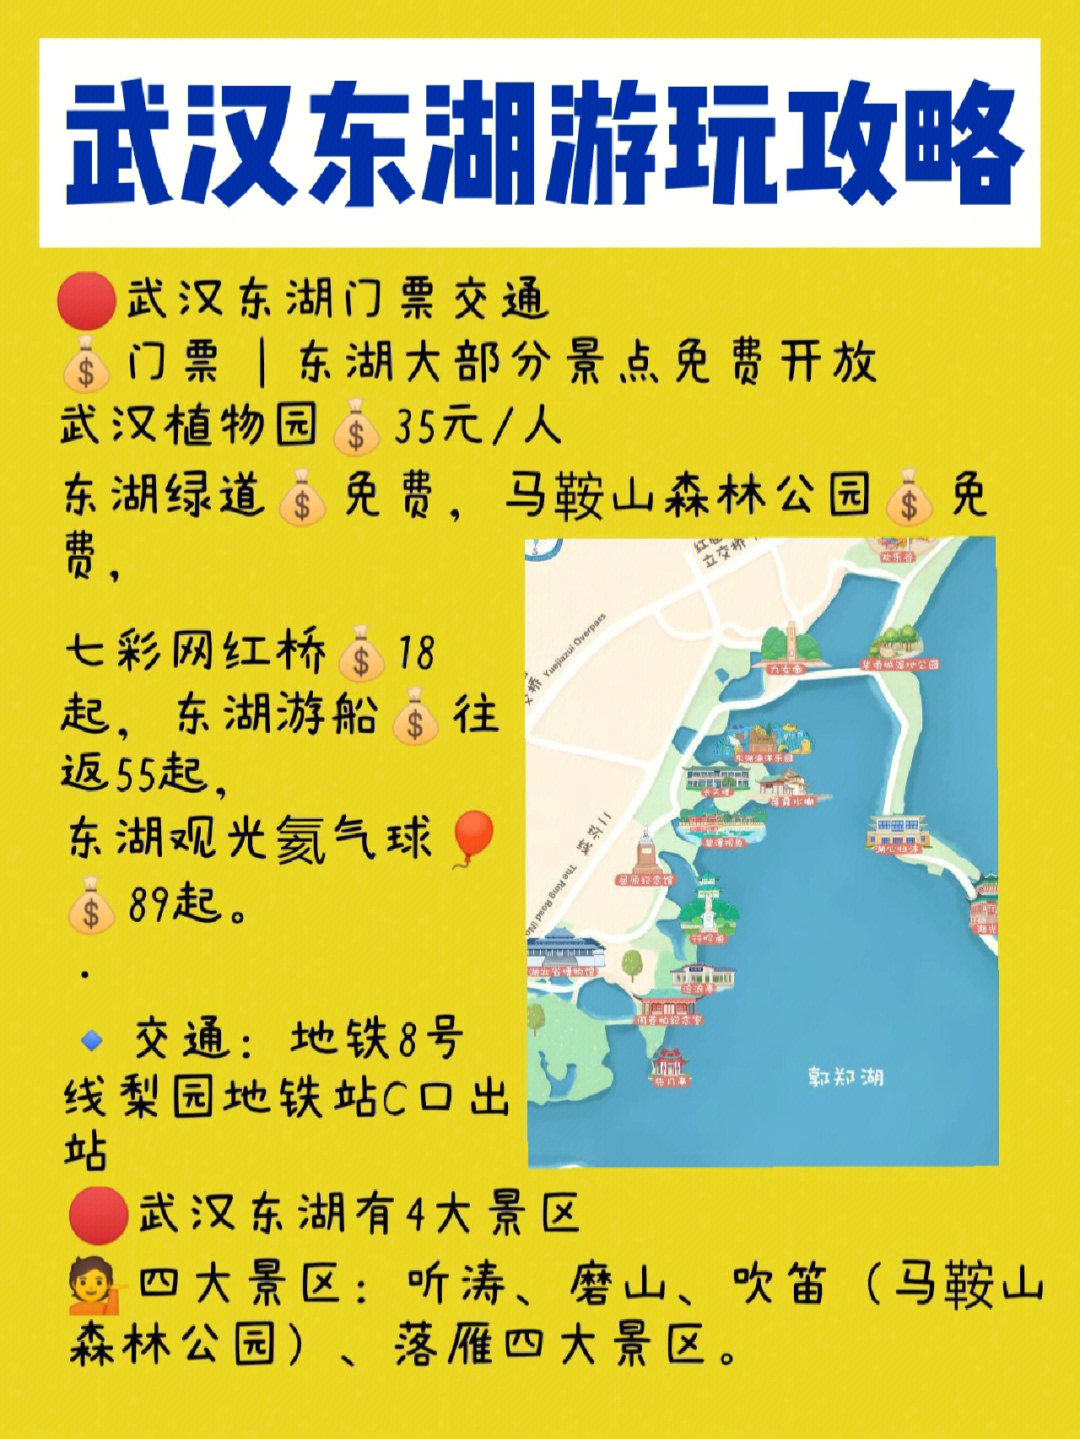 武汉植物园地图图片